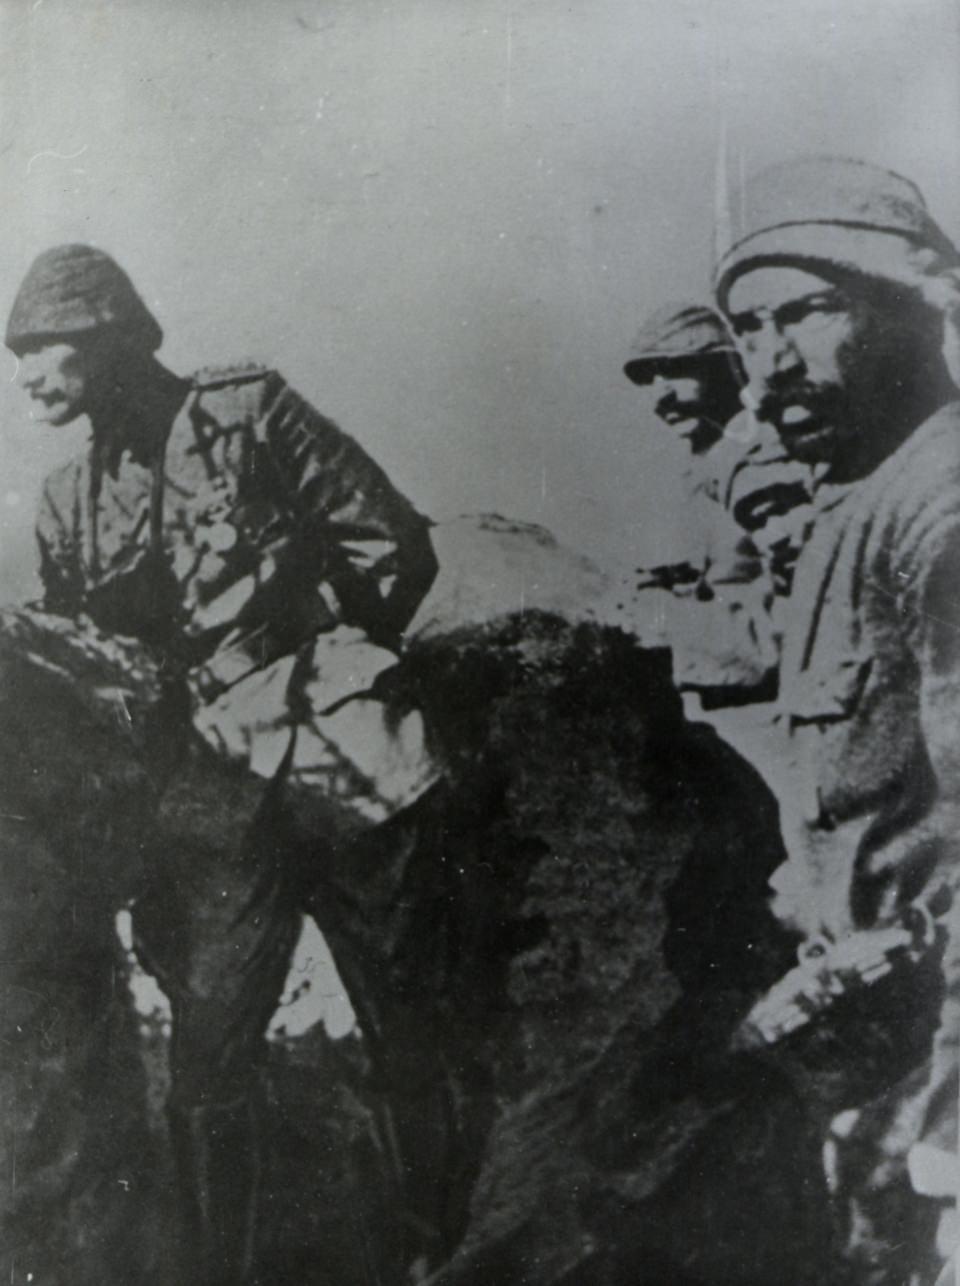 <p>Anafartalar Grup Komutanı Mustafa Kemal'in siperde çekilmiş bir fotoğrafı.</p>
<p> </p>
